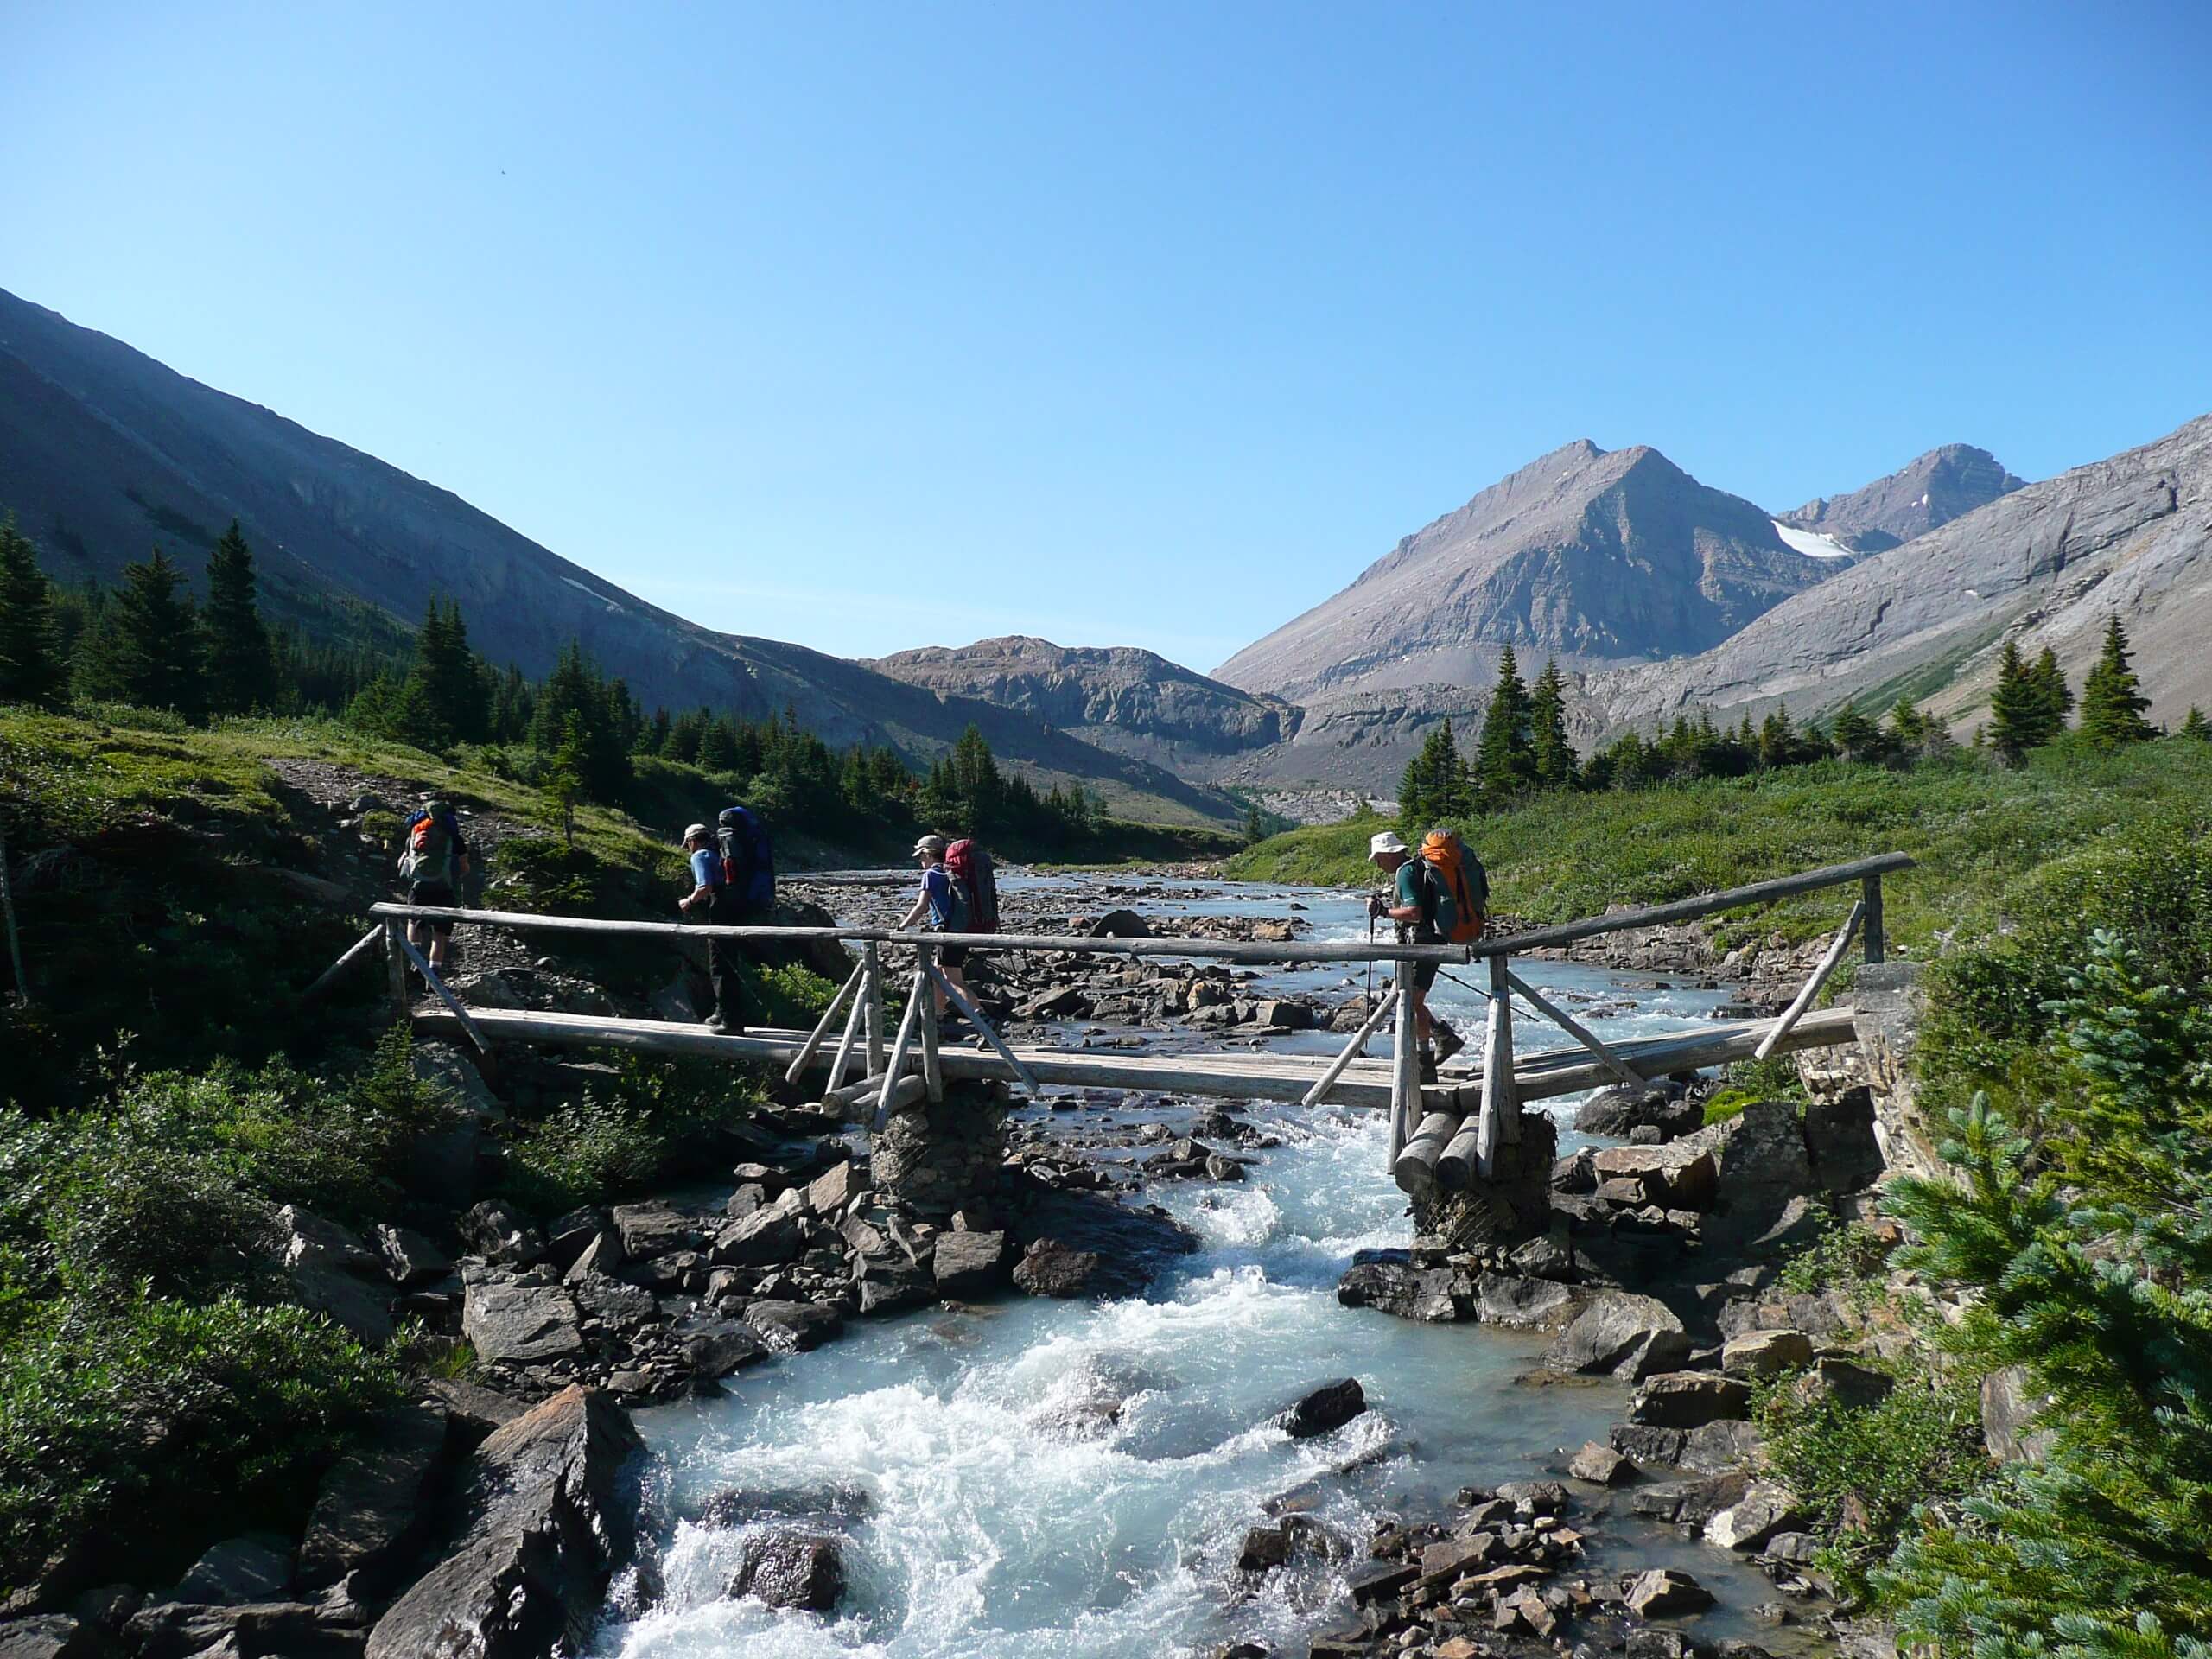 Group of hikers crossing the bridge in Jasper